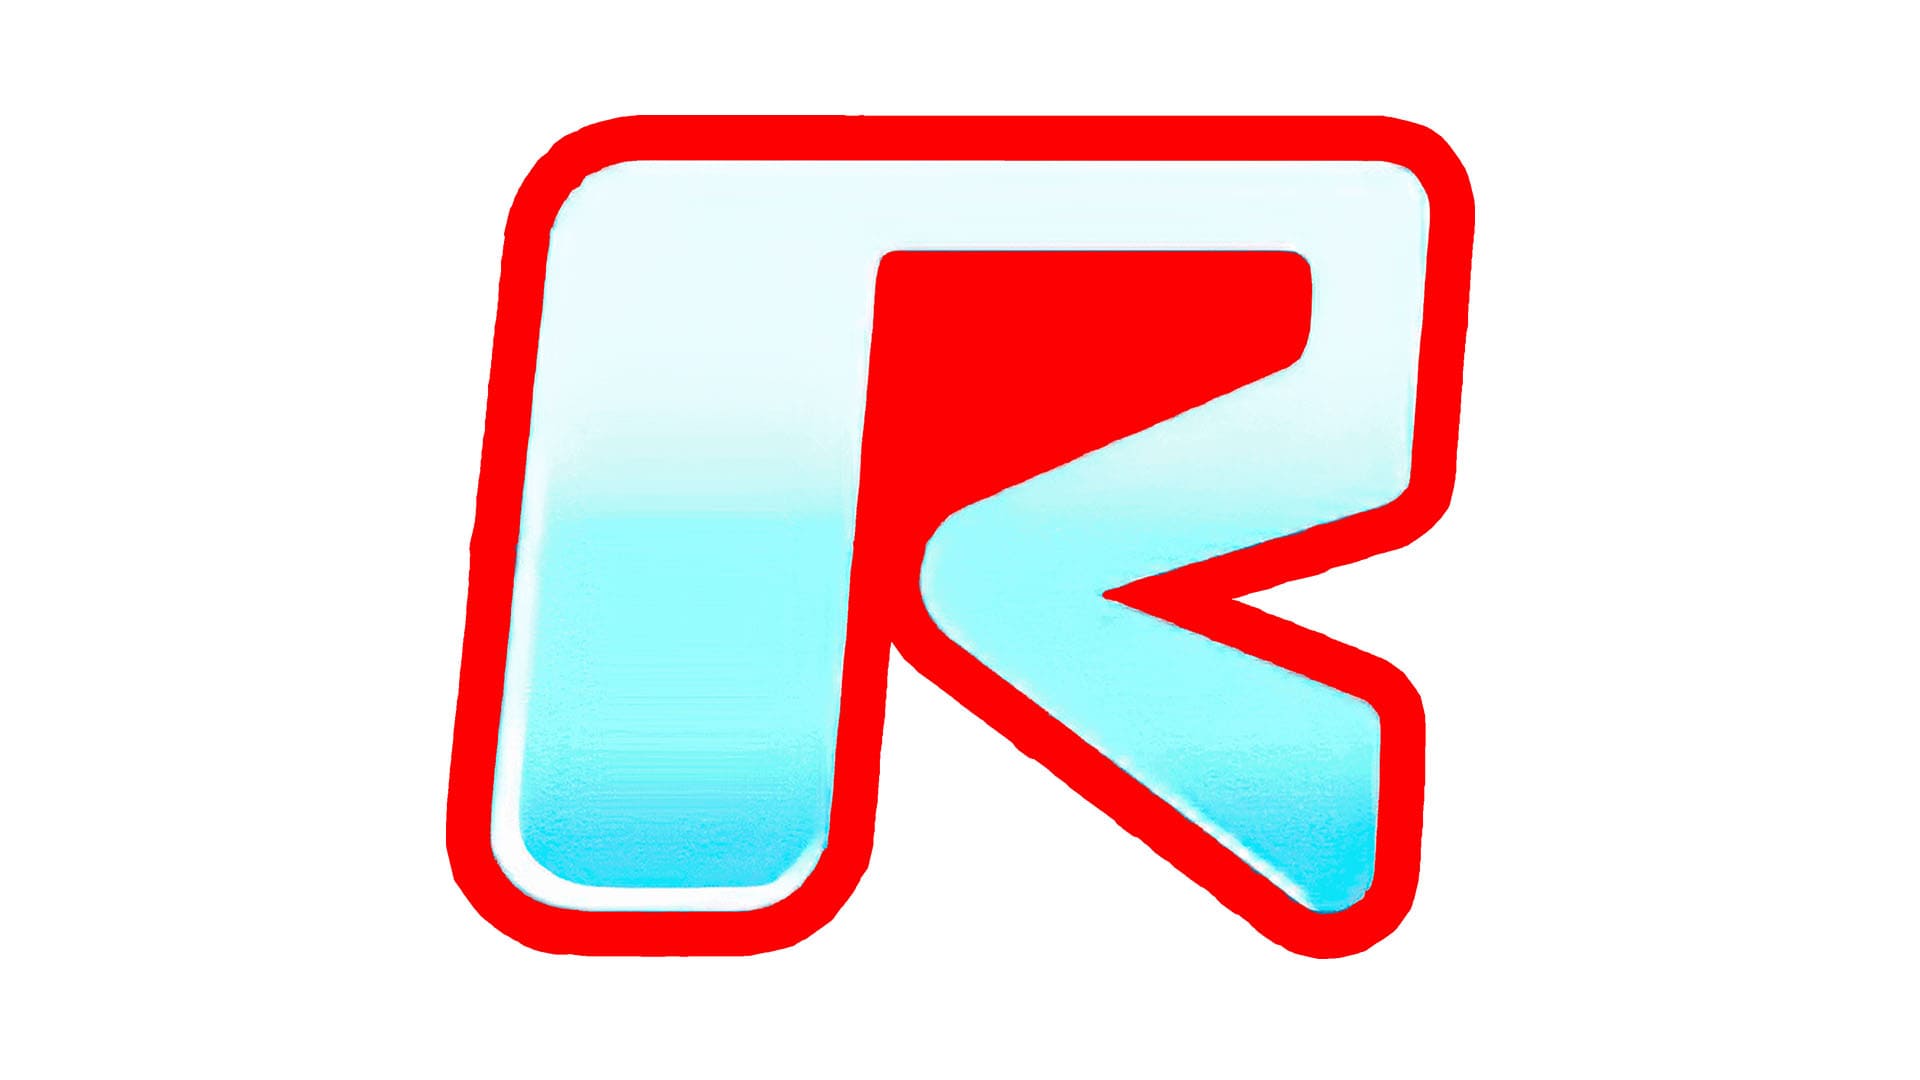 Design do logotipo Roblox - História, significado e evolução